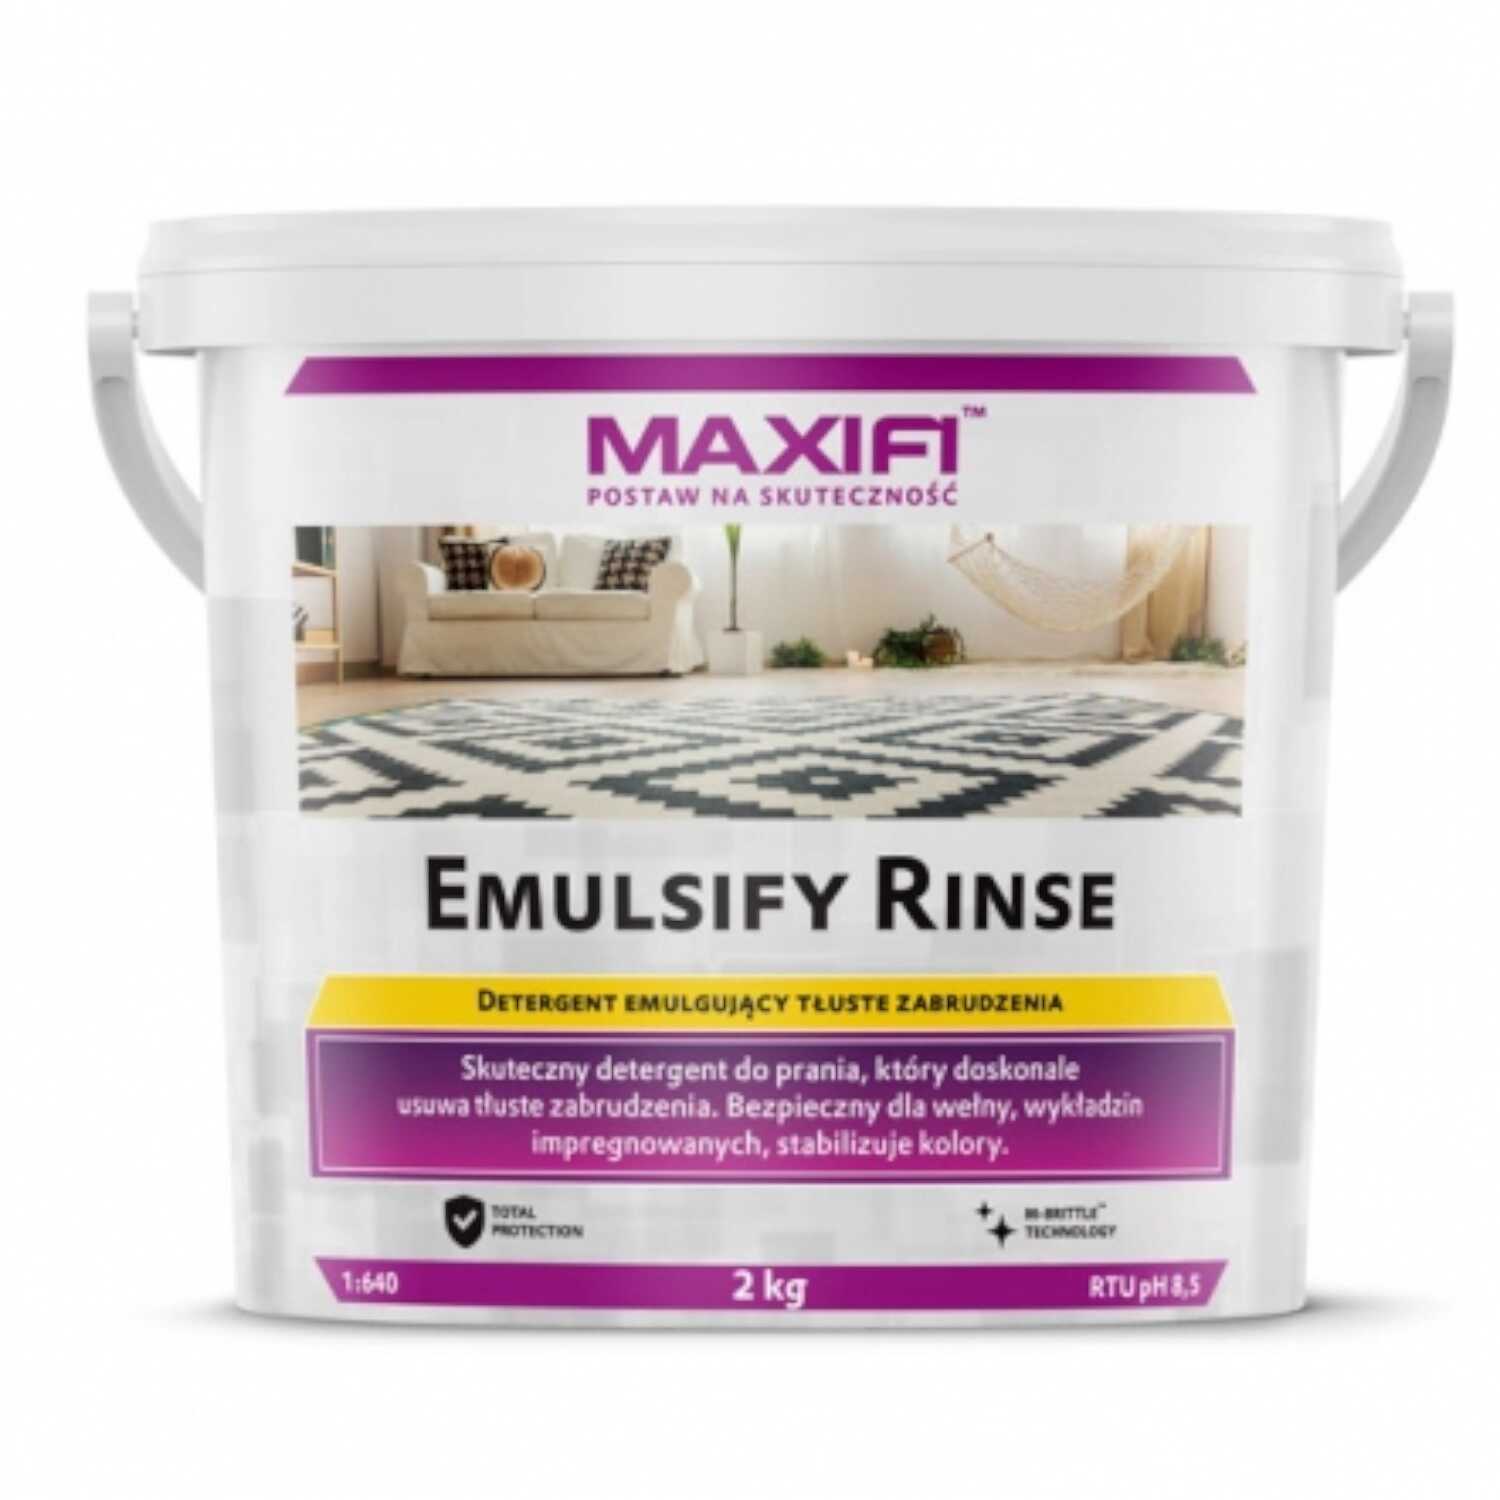 Maxifi Emulsify Rinse - Skuteczny detergent do prania tłustych plam 2kg